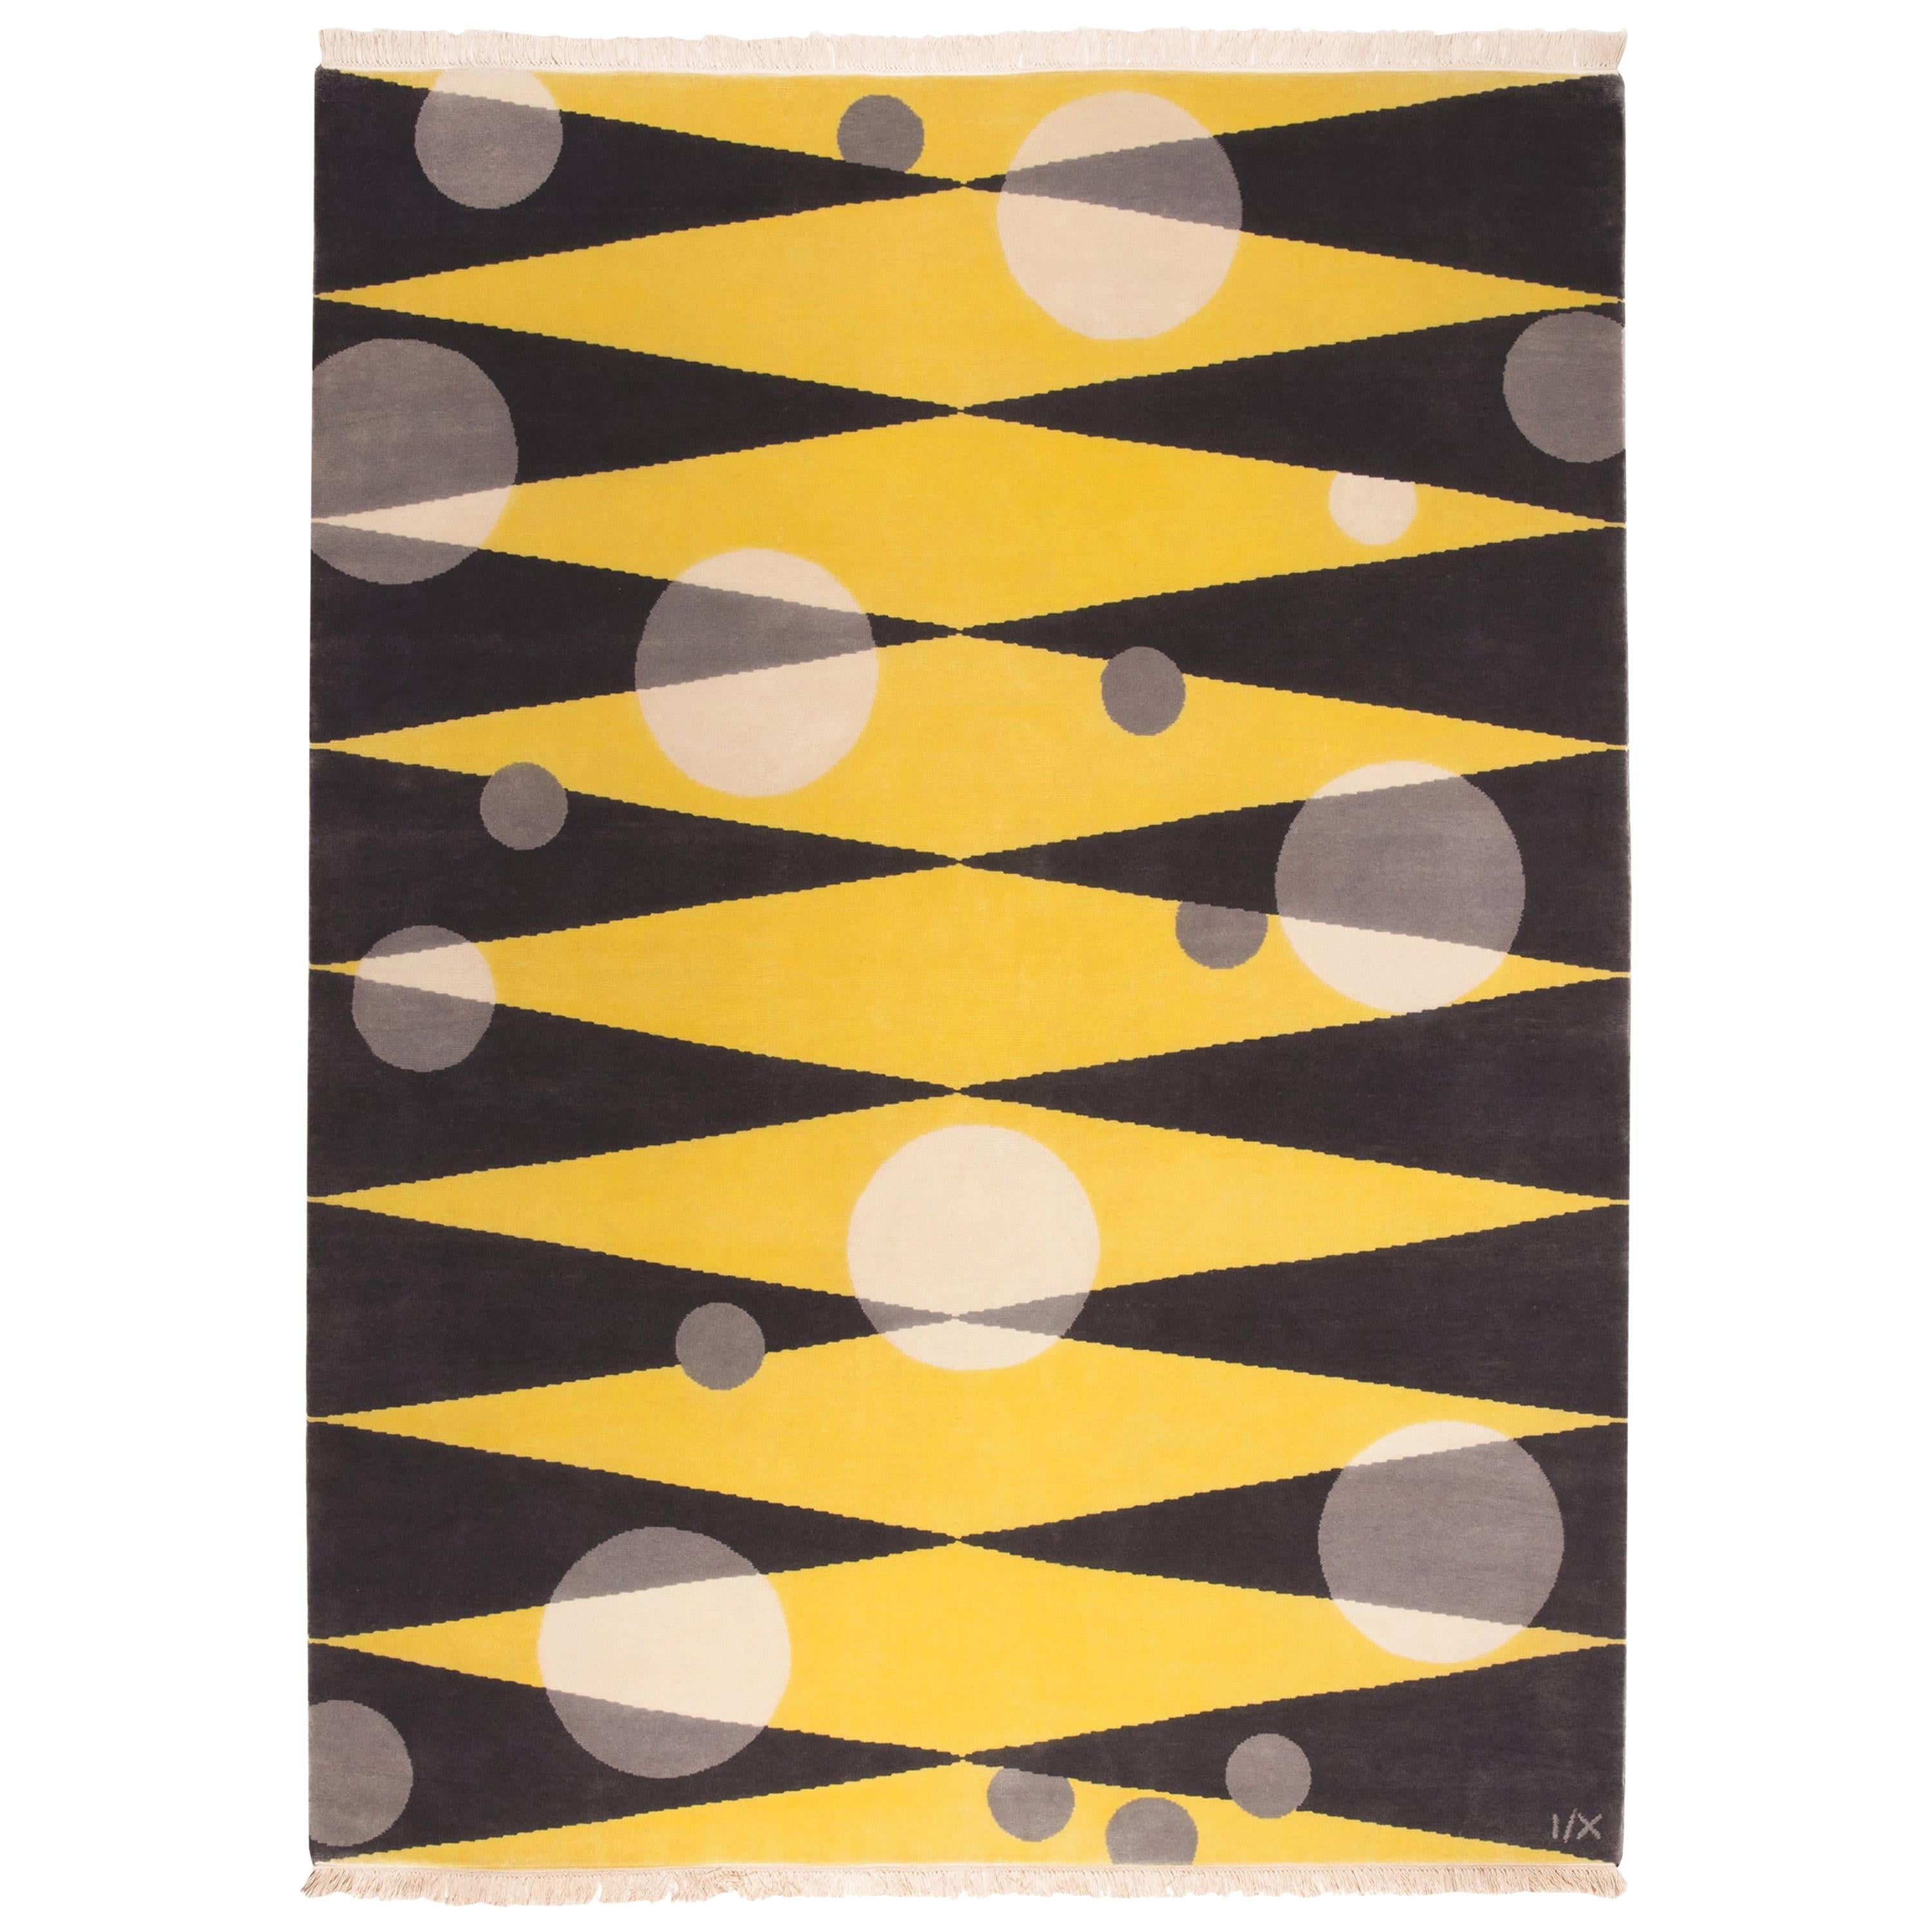  Rug Morning Sun - Modern Carpet Grey Yellow Black White Wool Geometric Circle  